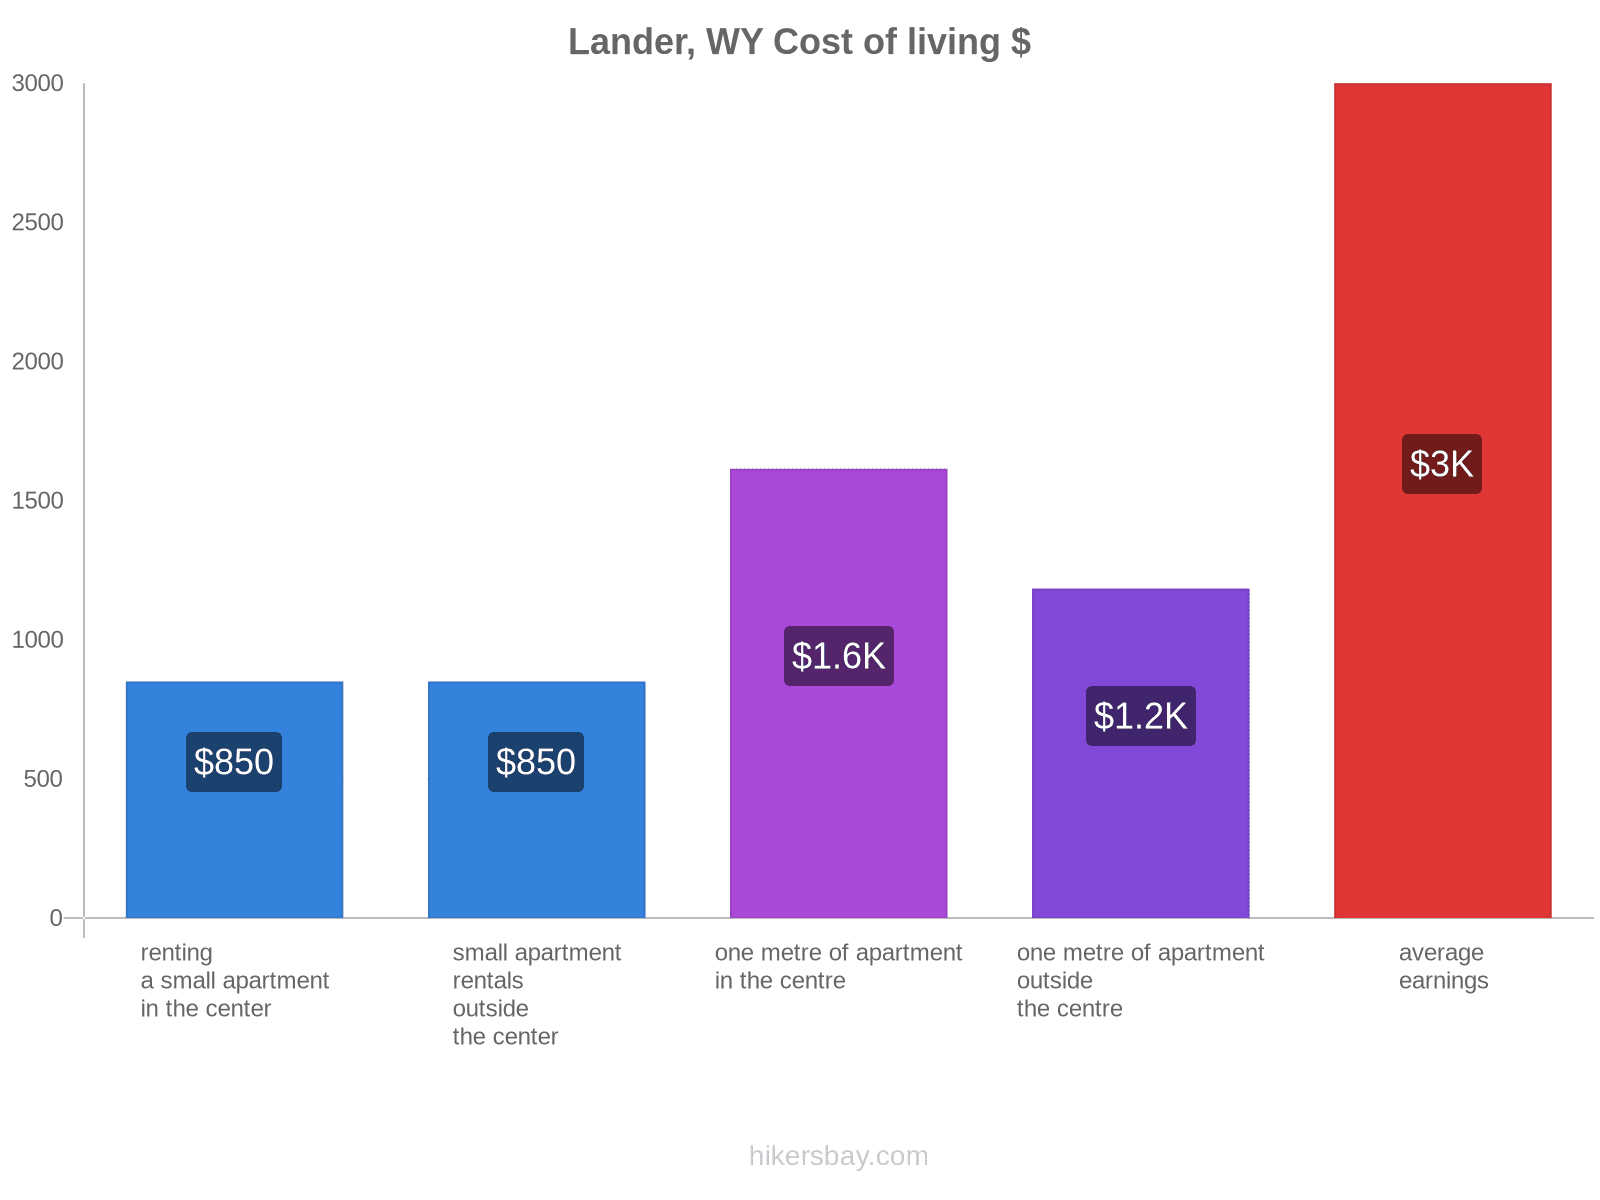 Lander, WY cost of living hikersbay.com